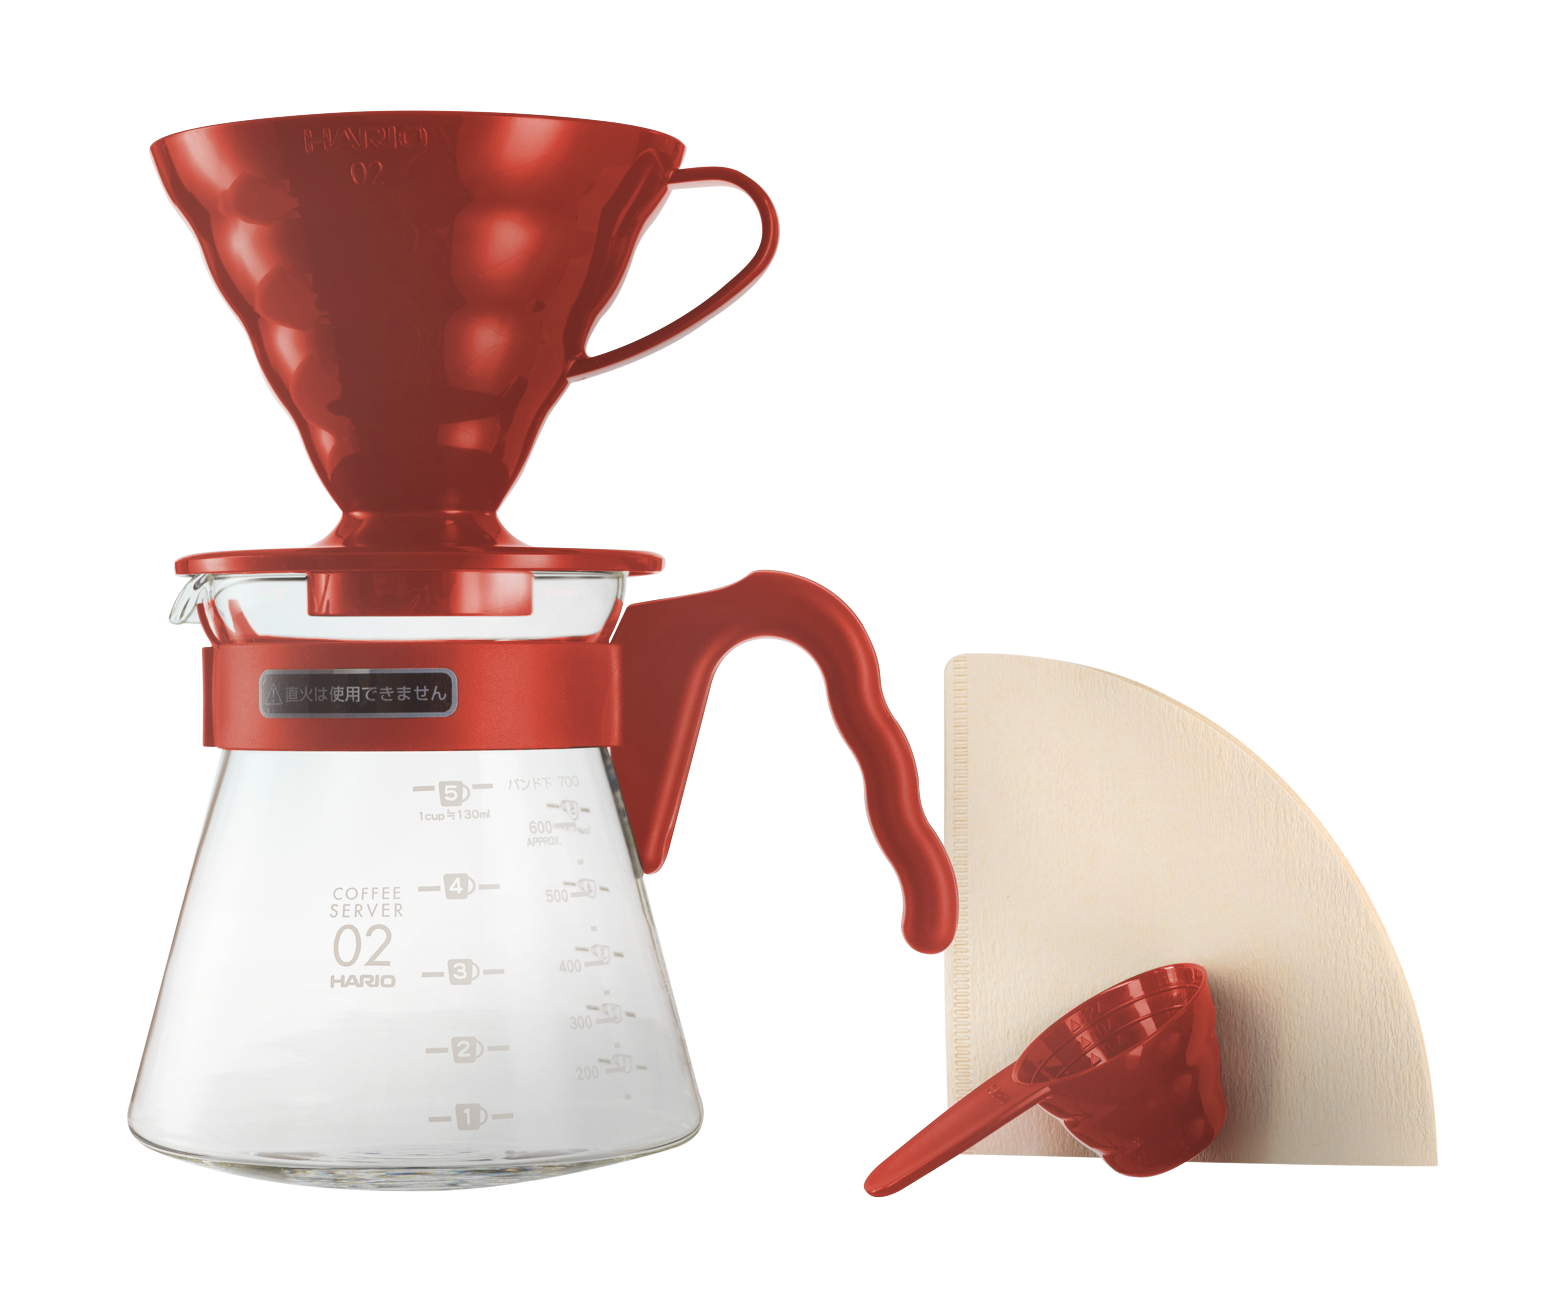 Cafetera V60 - Nuestros productos son seleccionado según las necesidades de  nuestros clientes, buscando cumplir con nuestro